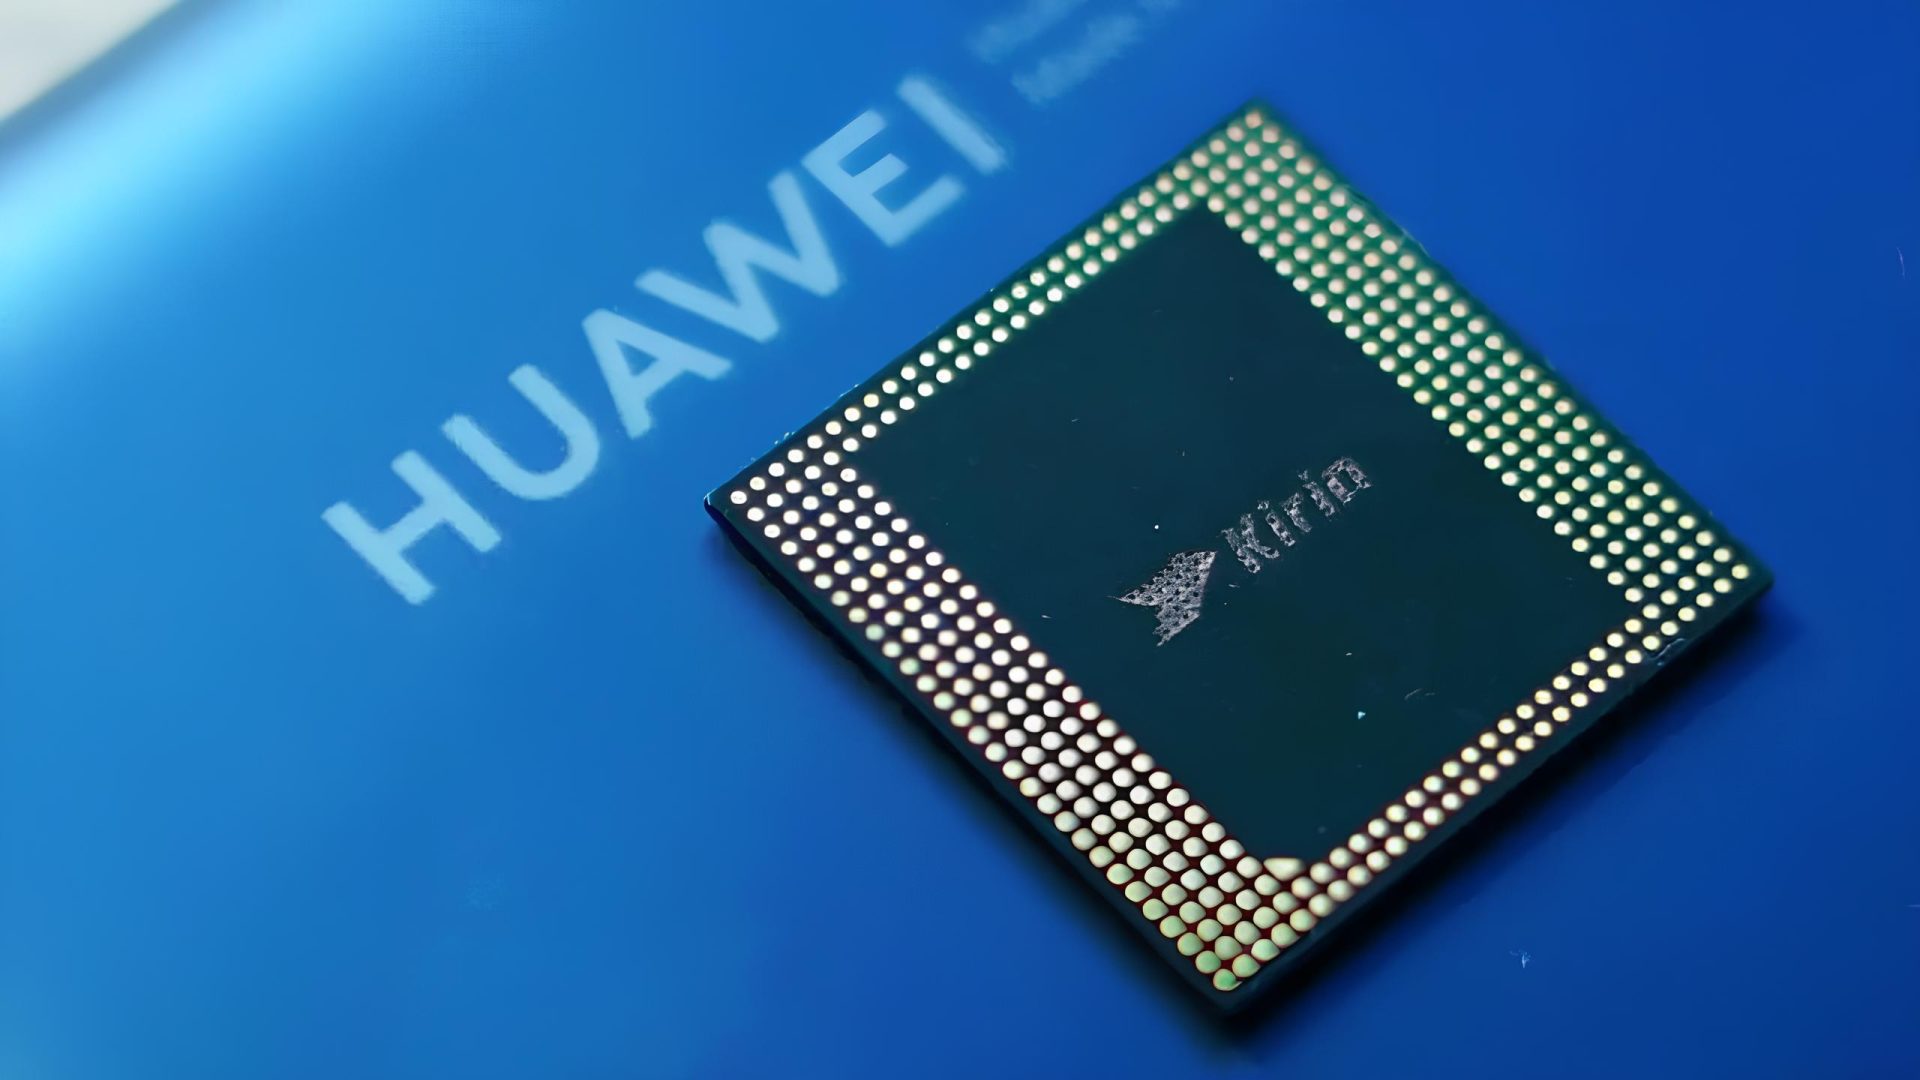 CPU Generasi Terbaru Huawei bisa menandingi CPU Terbaik milik Apple, Kirin CPU dengan Taishan V130 Core di rumorkan menandingi performa Apple M3